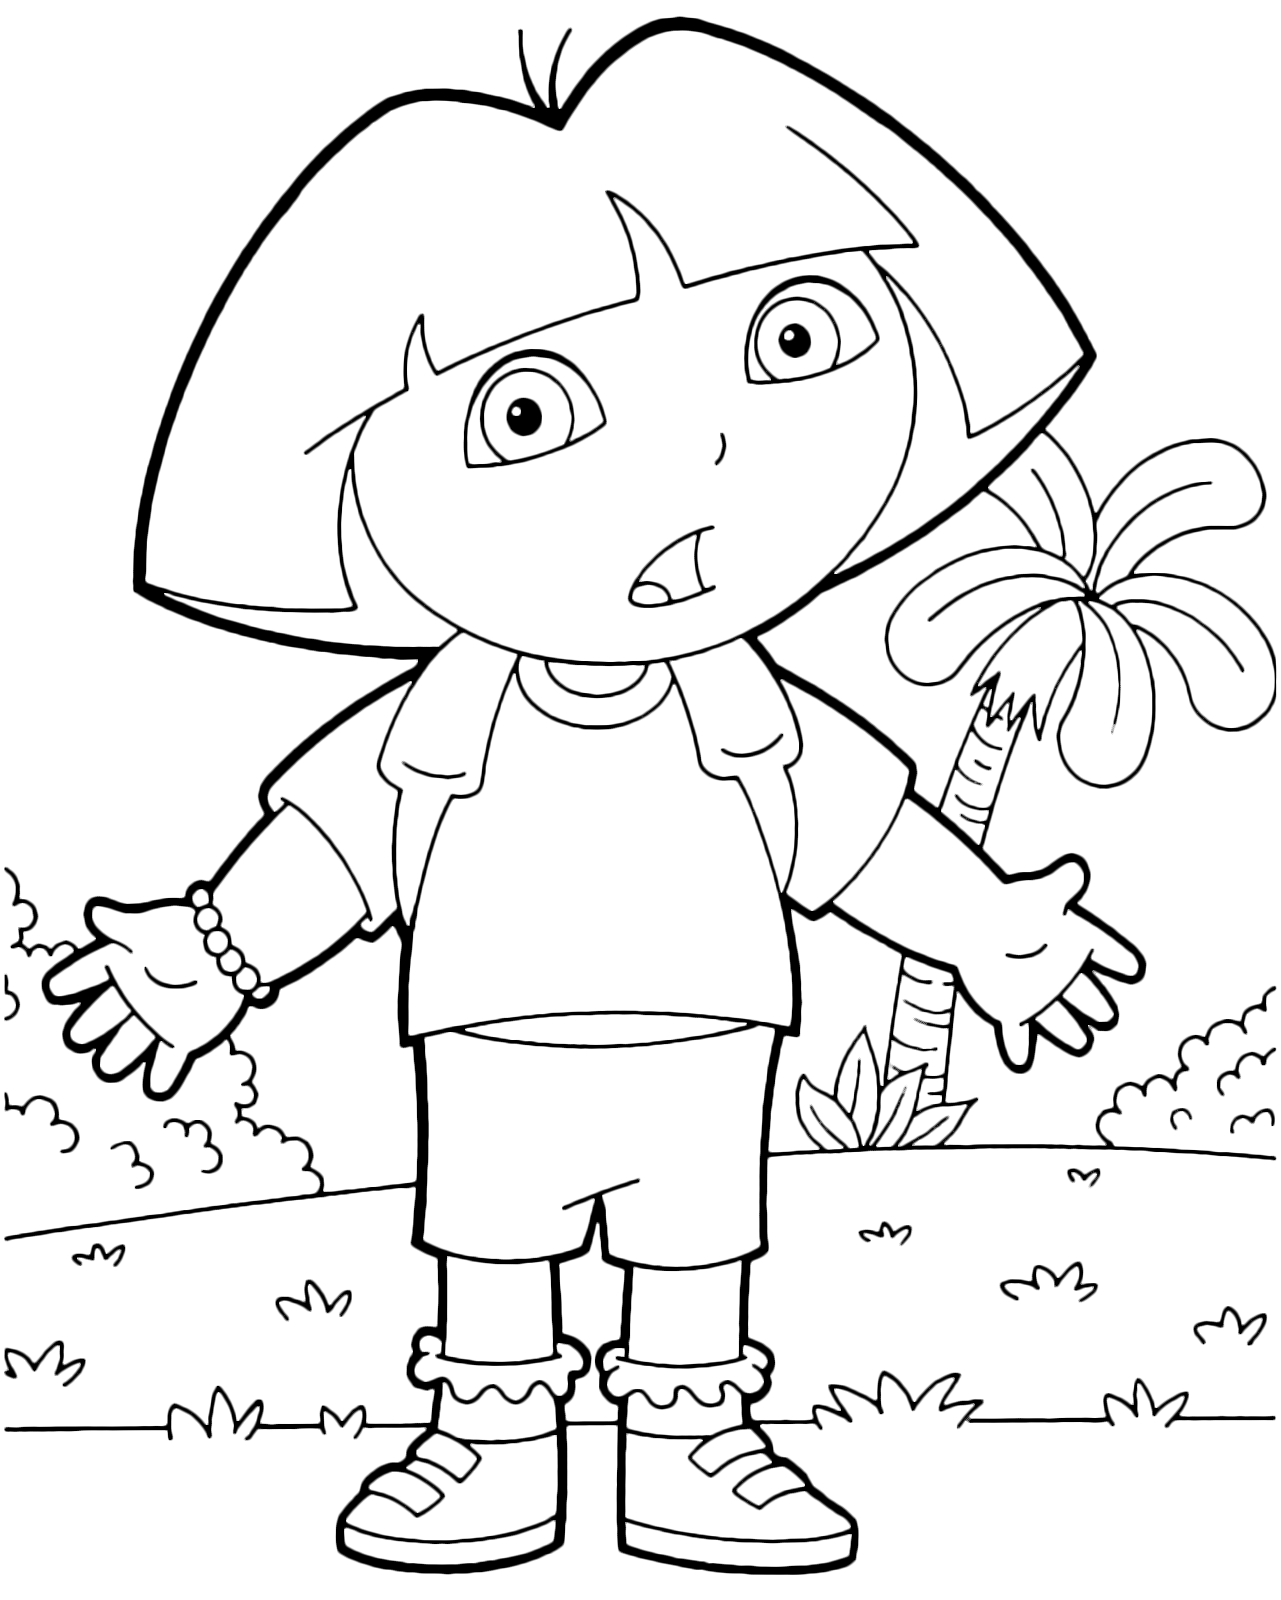 Dora l'esploratrice - Dora ha un'espressione perplessa